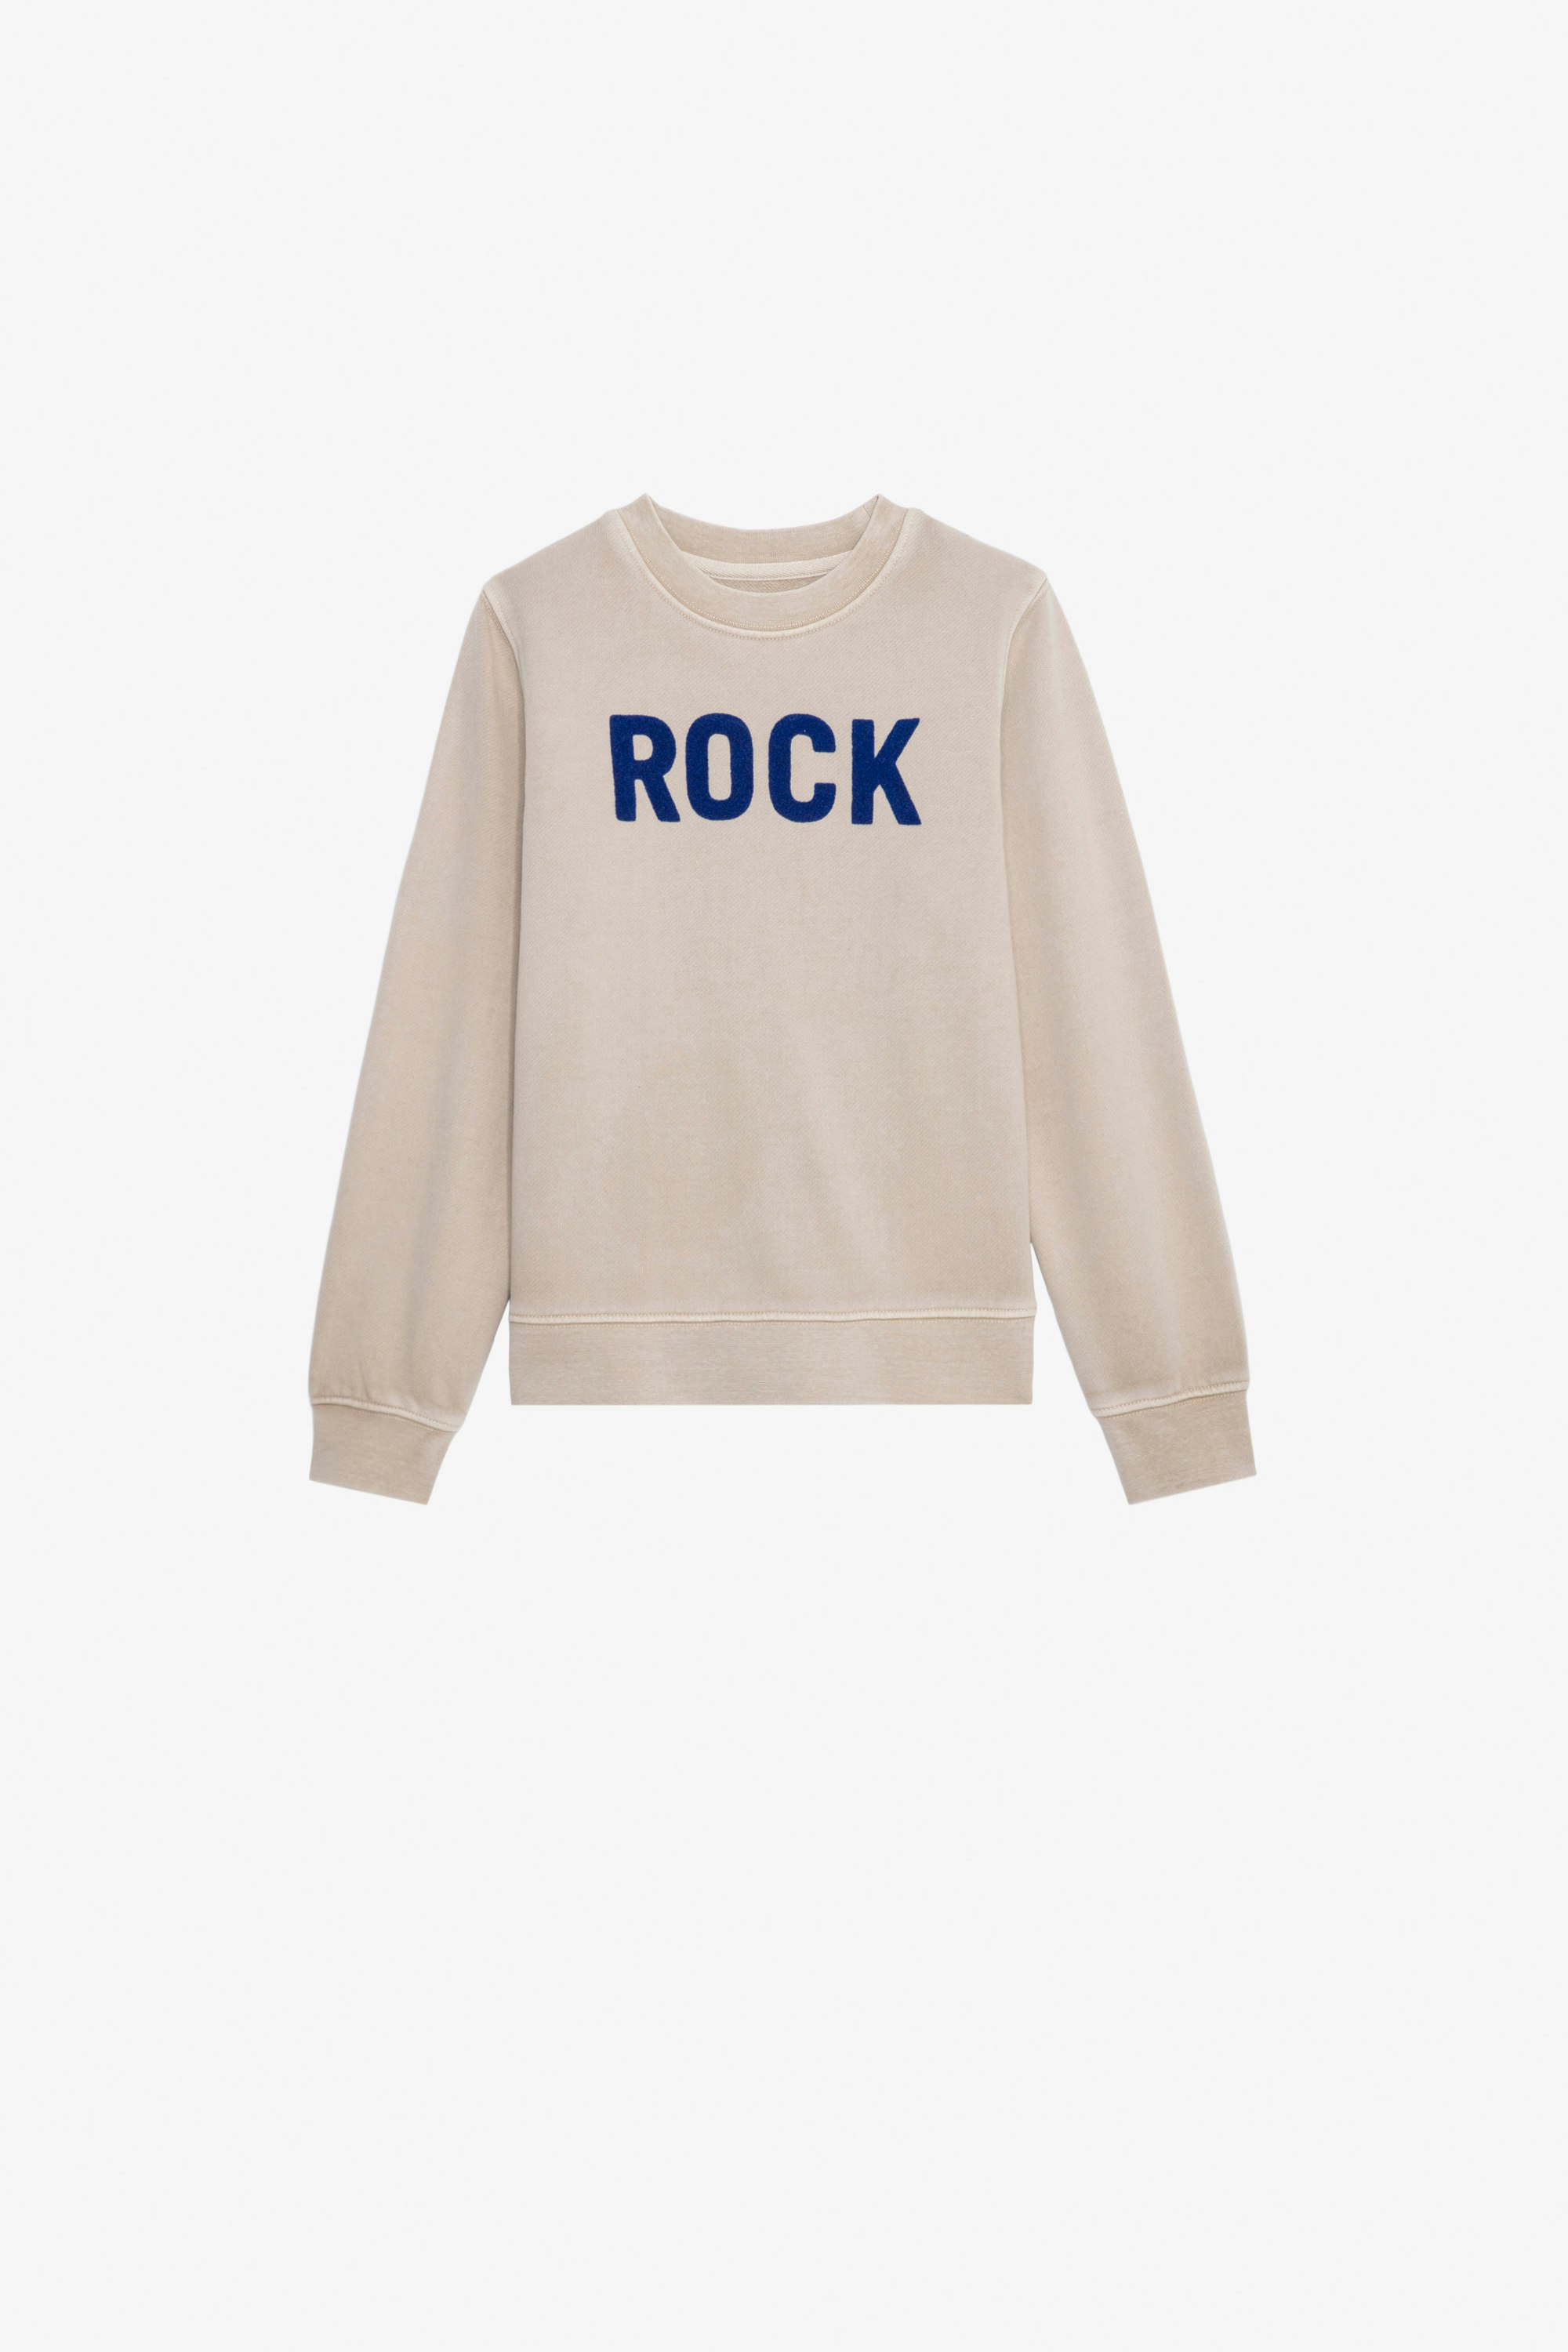 Simba Boys’ Sweatshirt - Boys’ beige cotton fleece sweatshirt with “Rock” slogan.